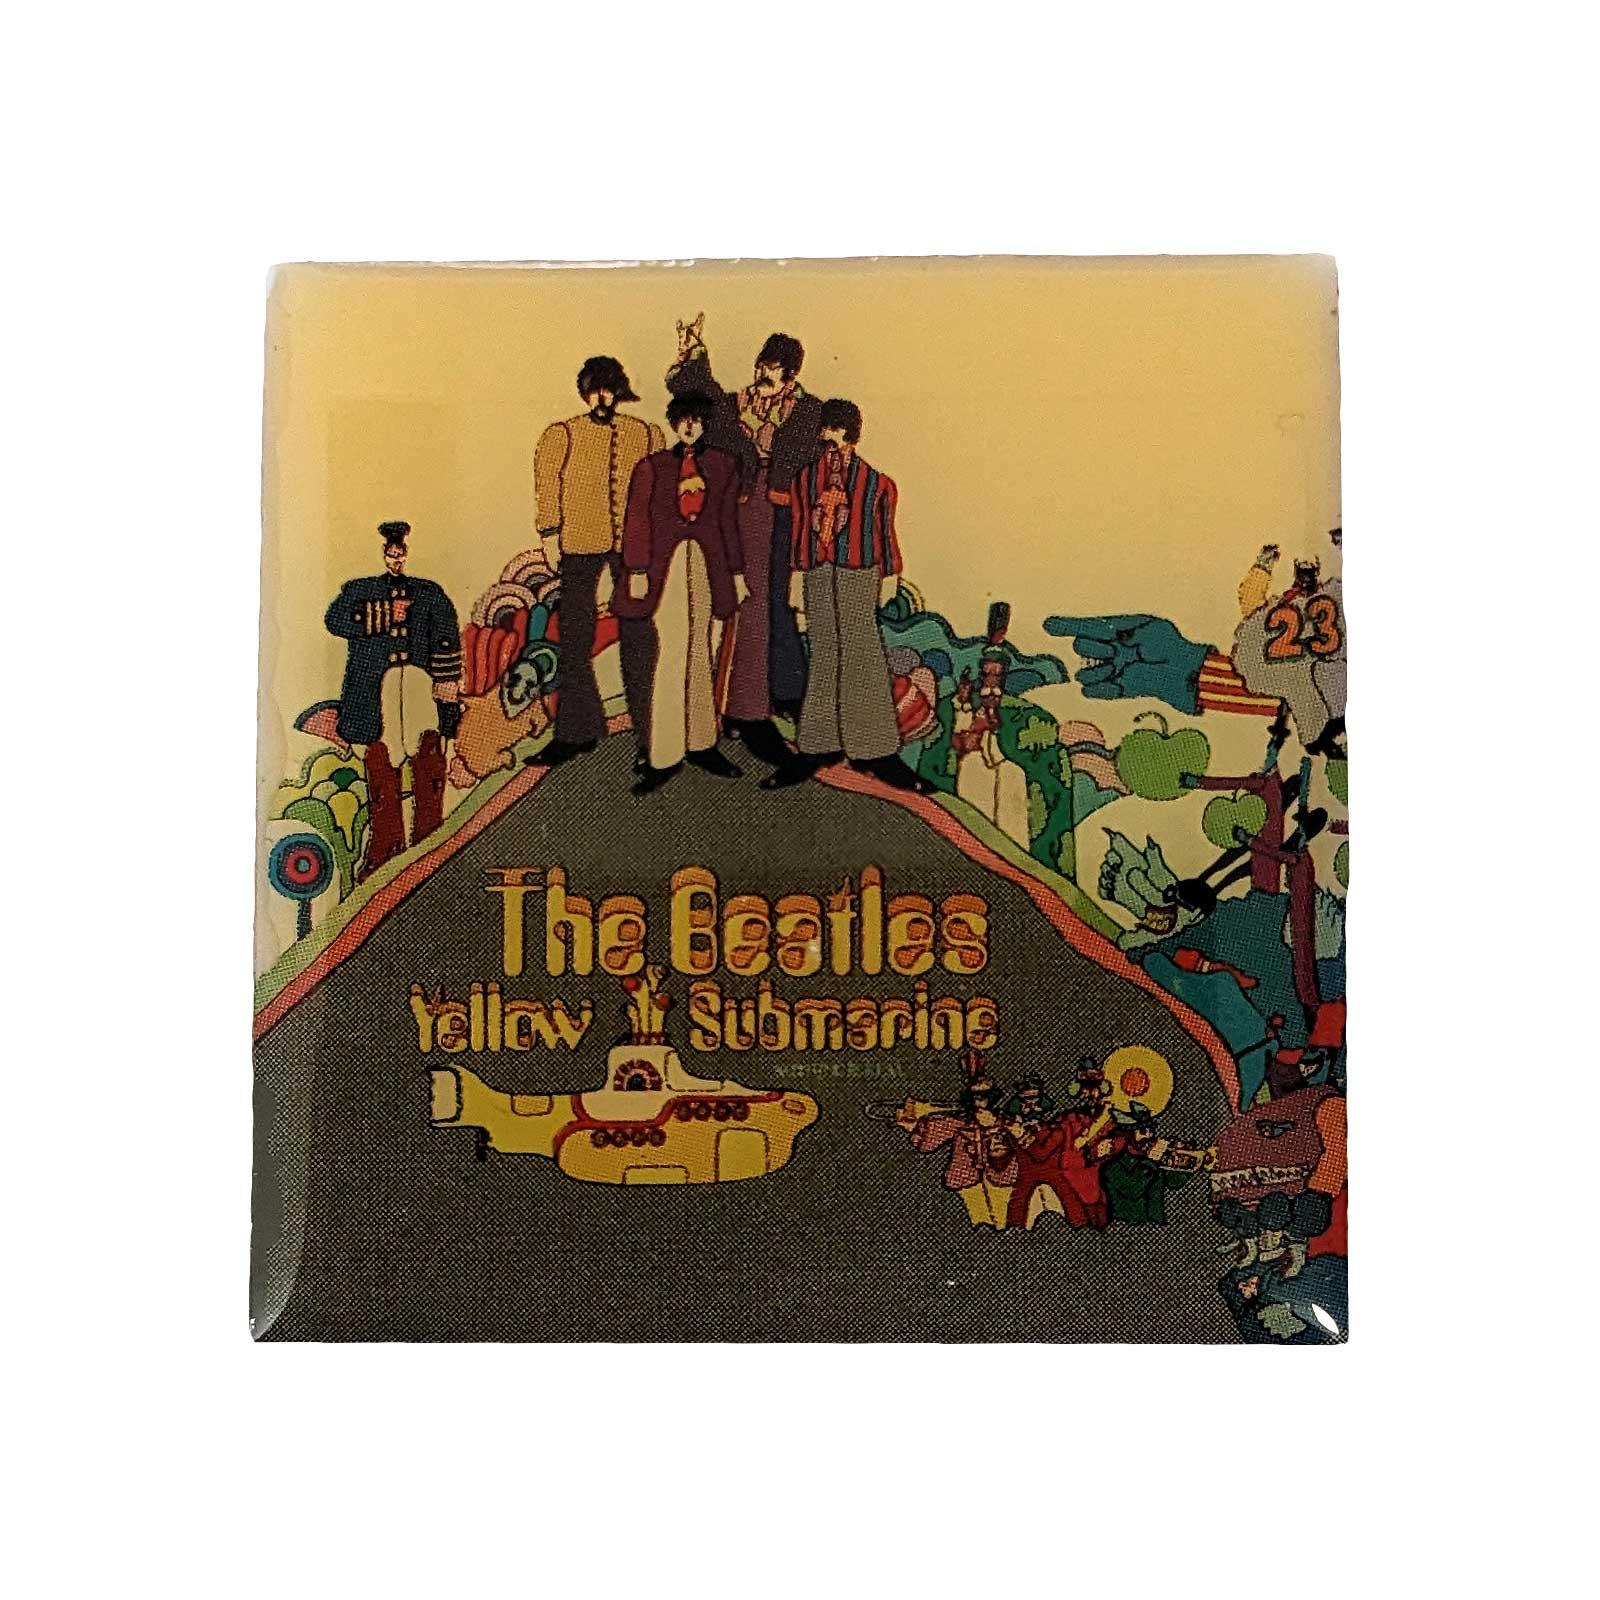 (ビートルズ) The Beatles オフィシャル商品 Yellow Submarine バッジ 【海外通販】